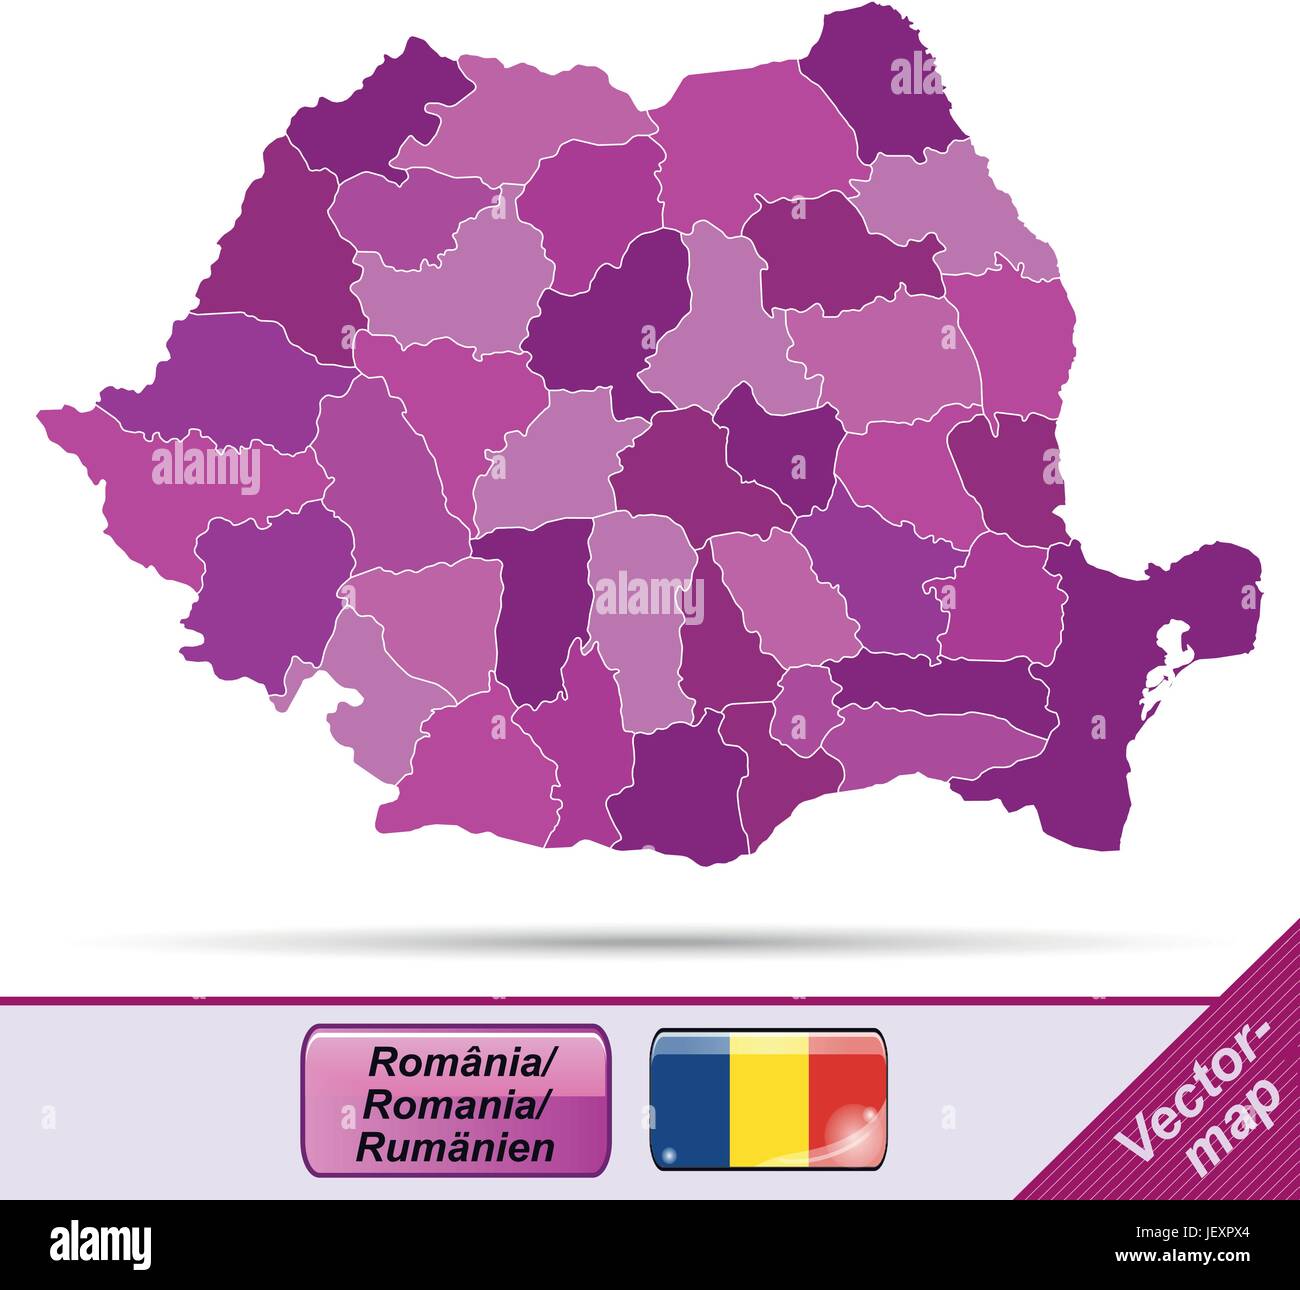 Mappa di confine della Romania con bordi in viola Illustrazione Vettoriale